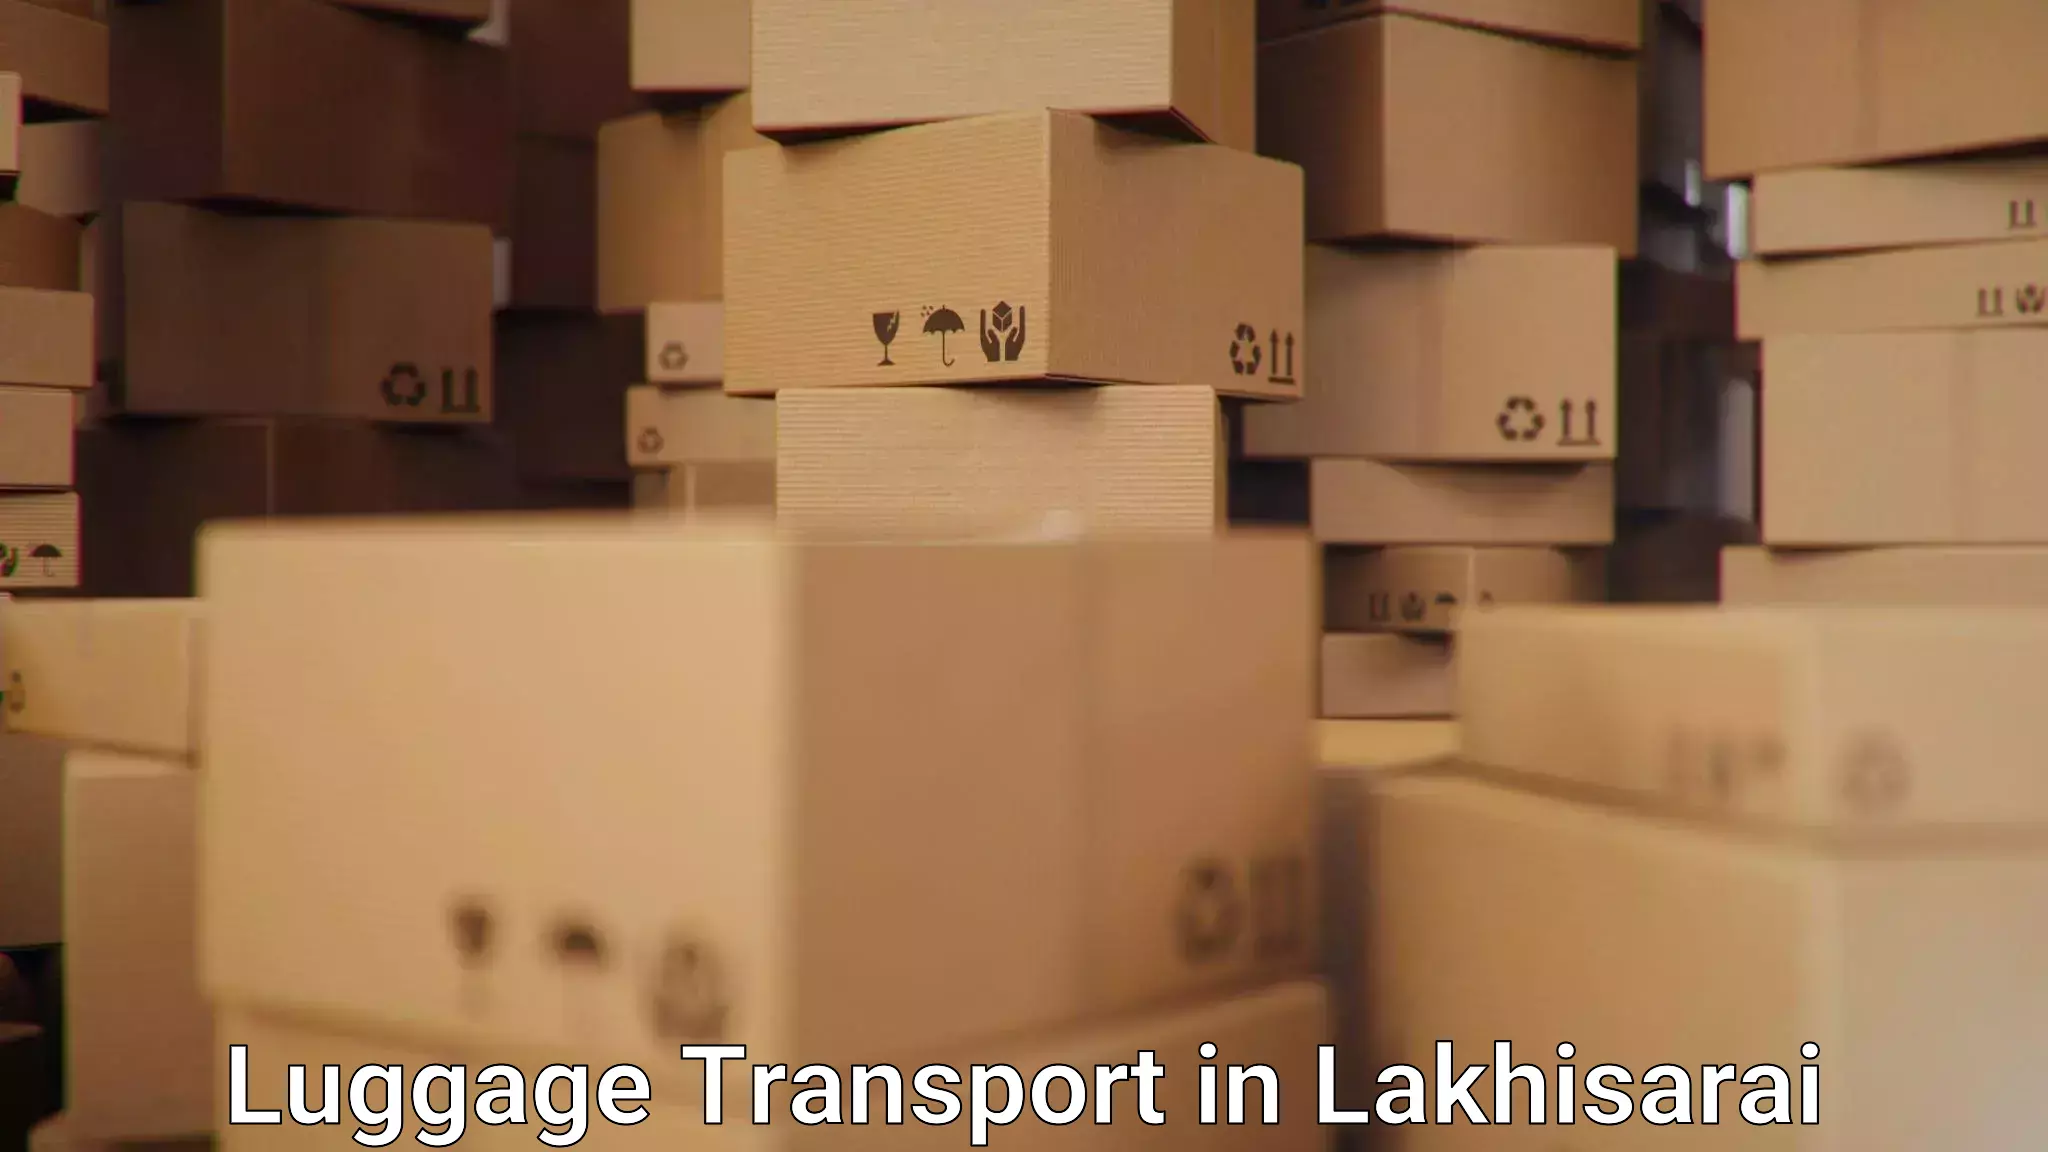 Digital baggage courier in Lakhisarai